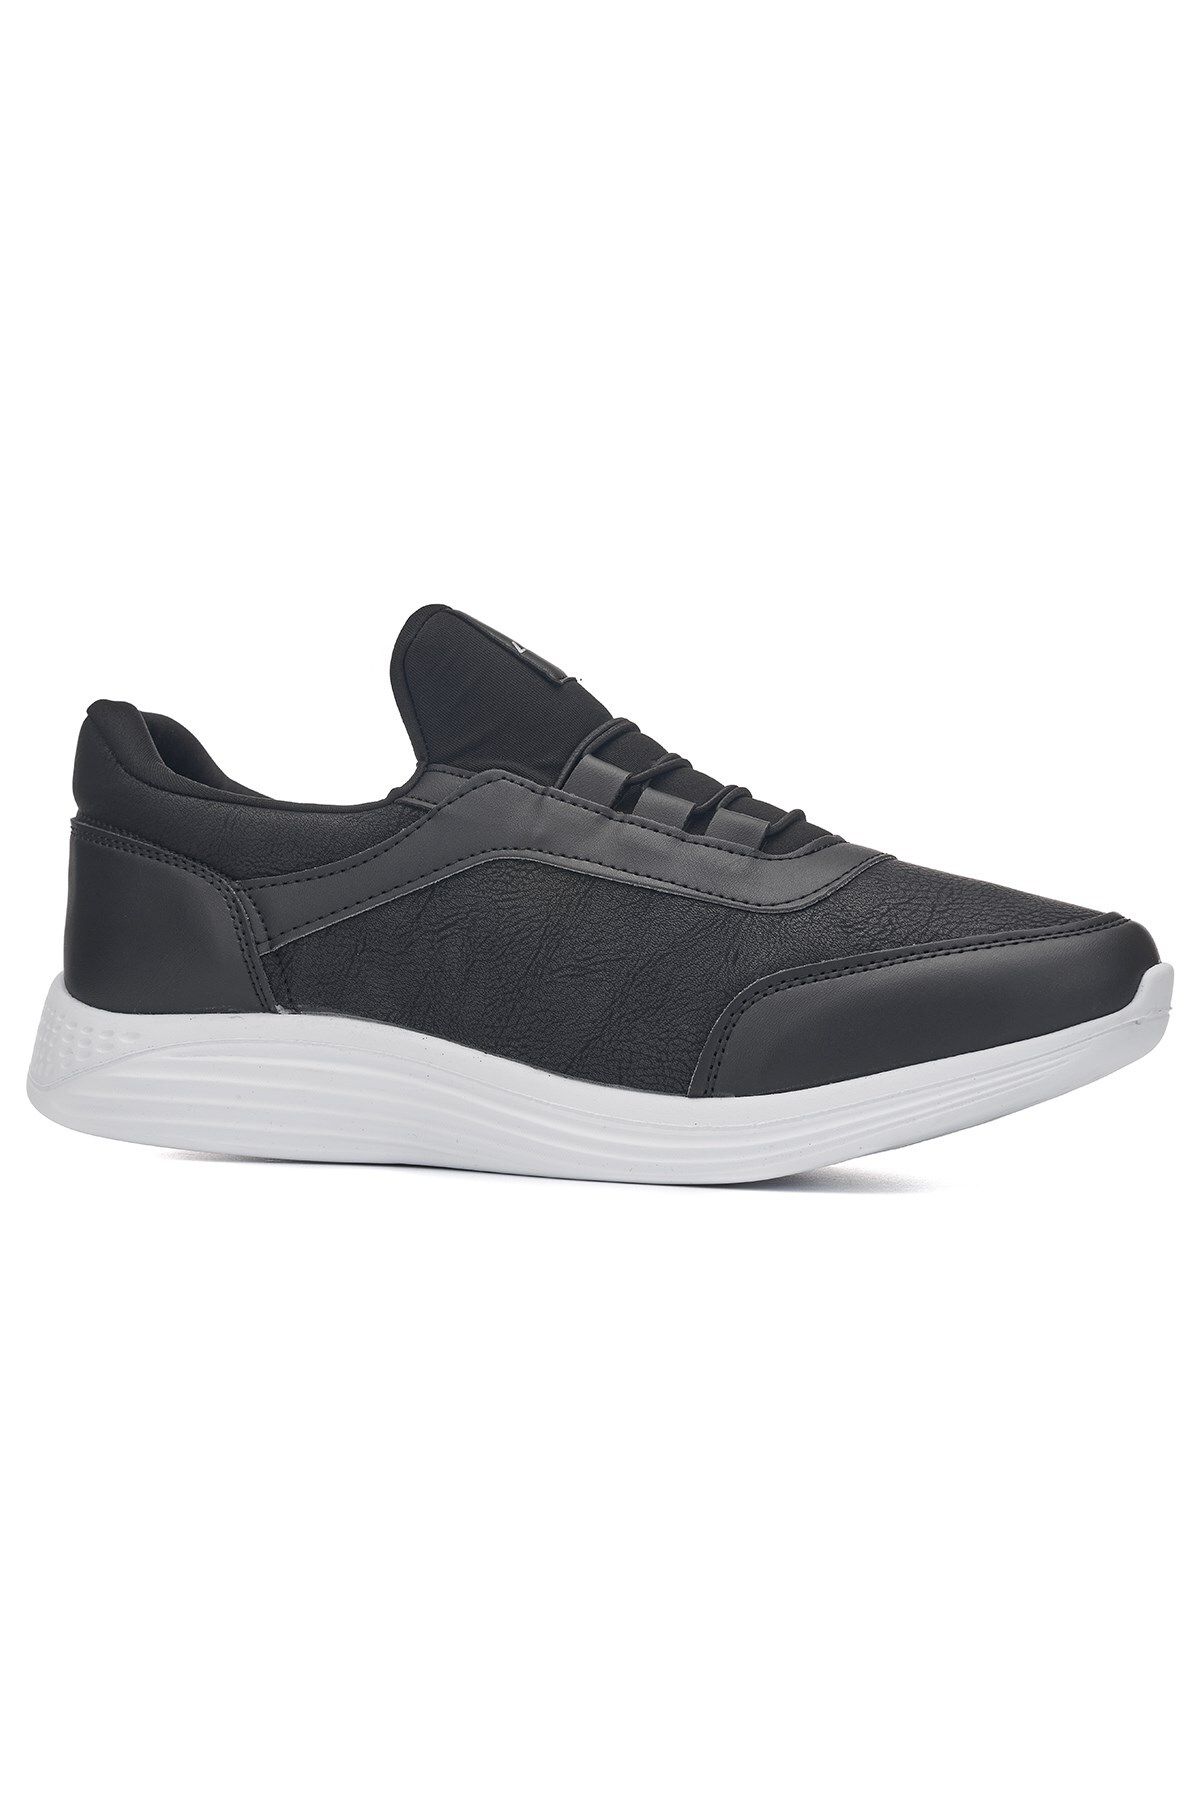 İmerShoes Günlük Erkek Yetişkin Sneaker Büyük Numara Spor Ayakkabı Lastik Bağcıklı Rahat Esnek 110C